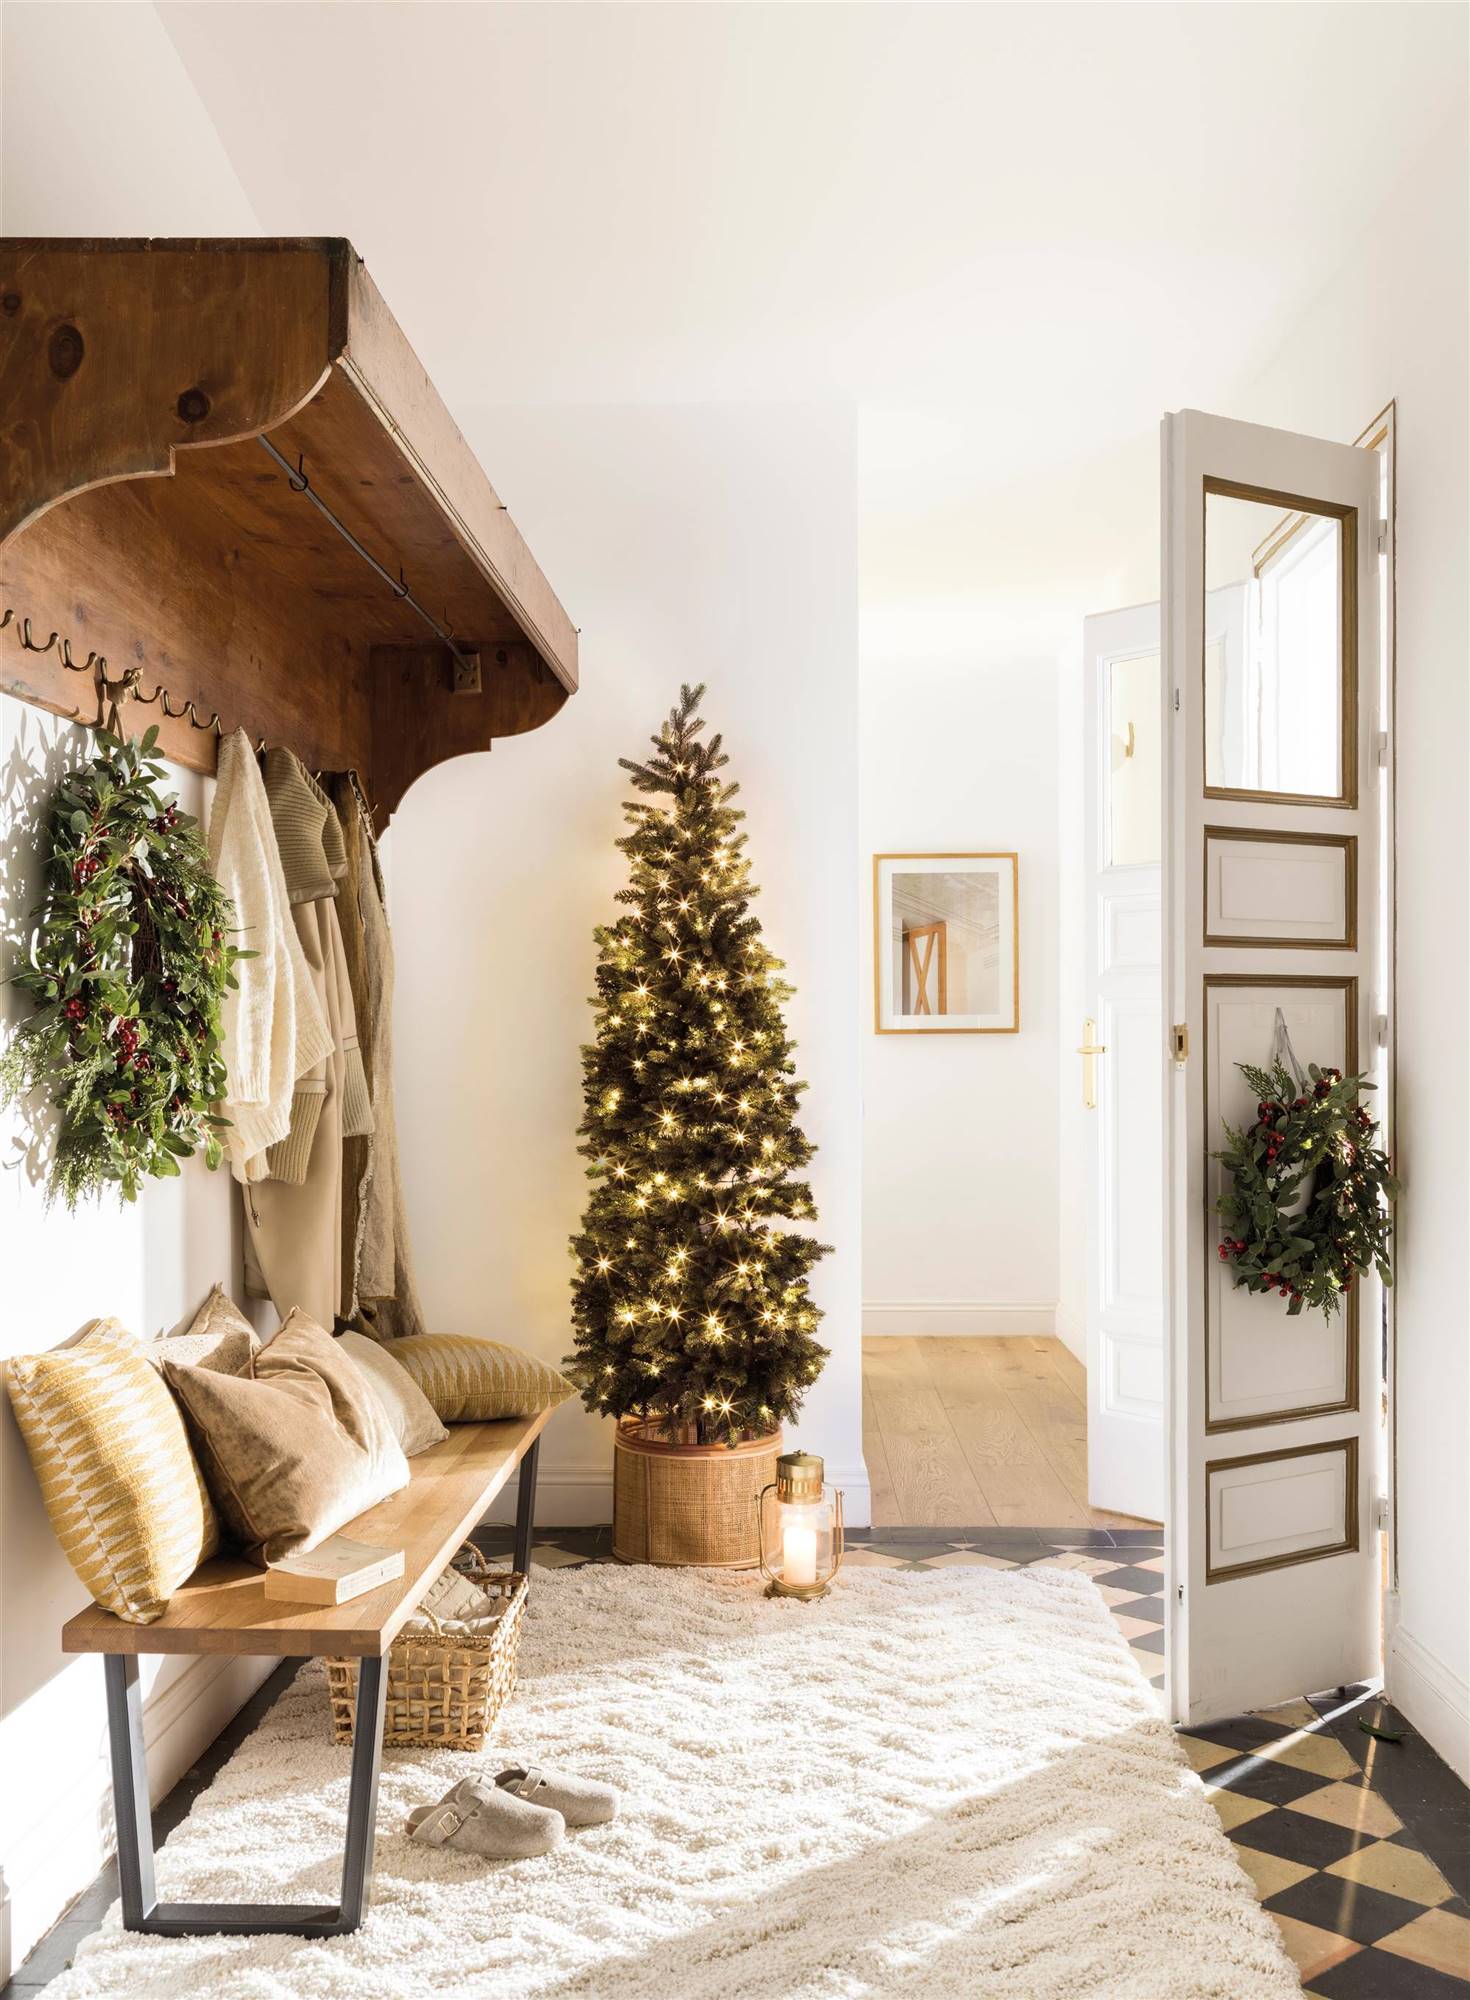  Recibidor con corona navideña en puerta entrada y árbol de Navidad.